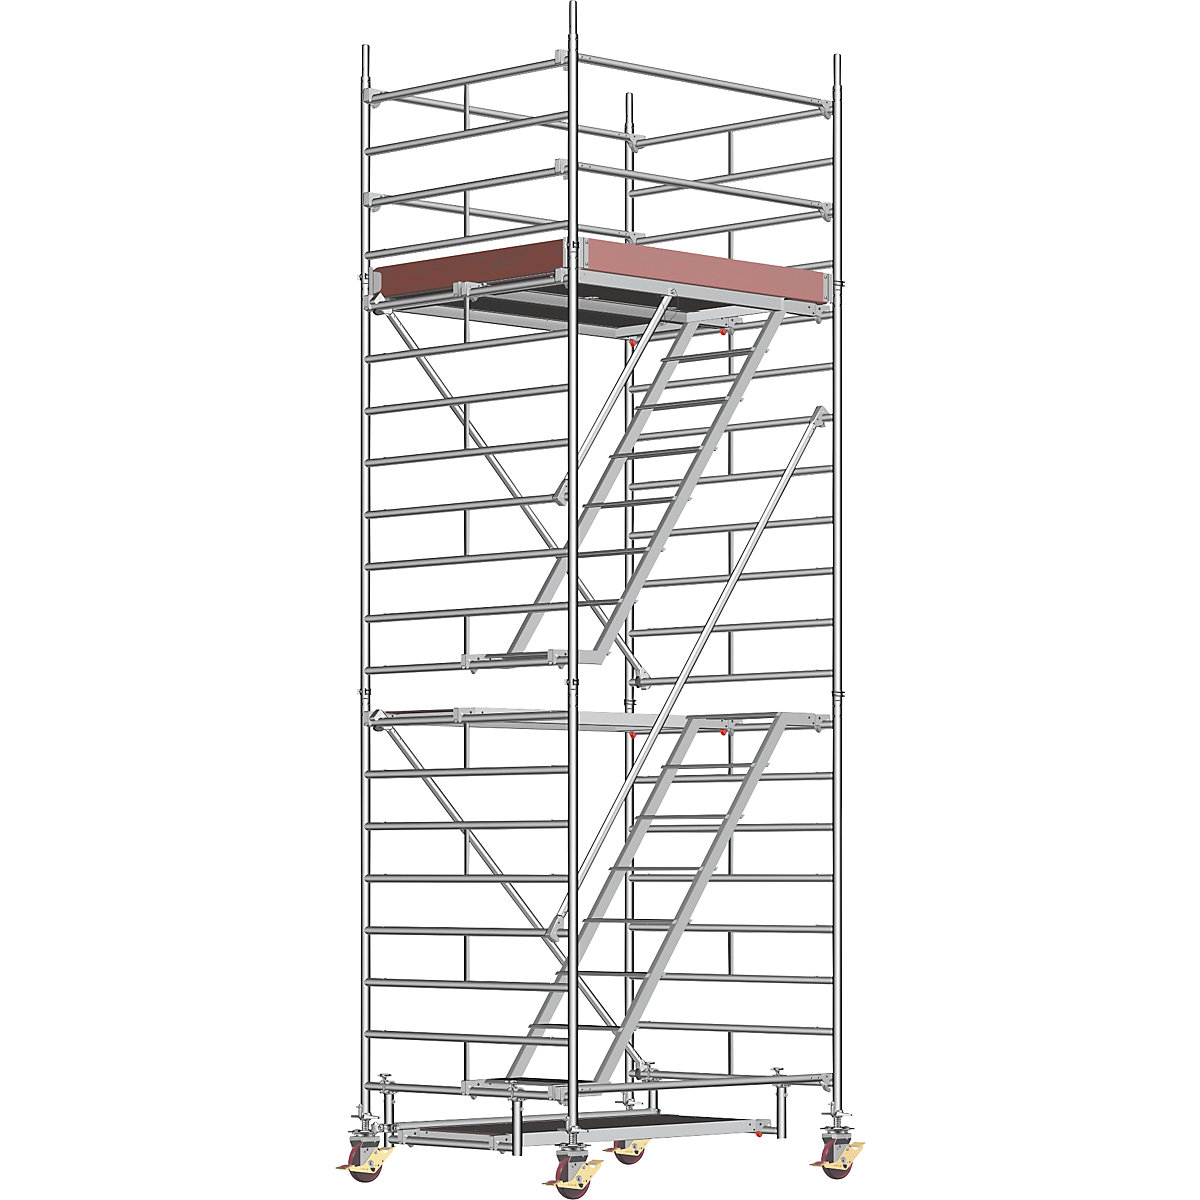 Schelă mobilă universală – Layher, cu scară, platformă 1,80 x 1,50 m, înălțimea schelei 5,43 m, minimum 2 buc.-4